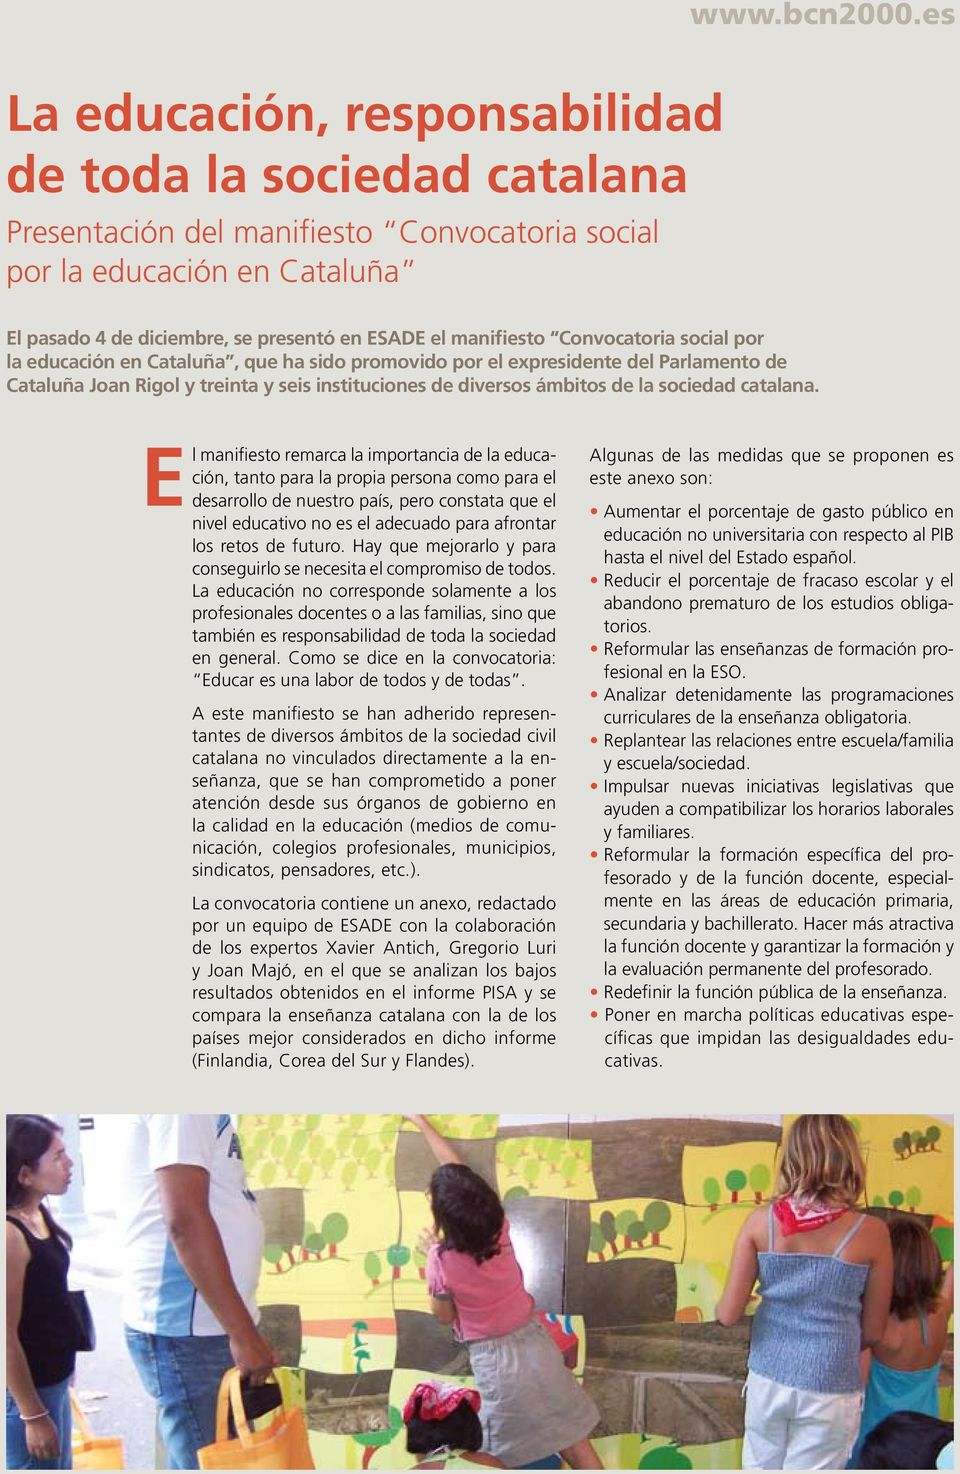 Convocatoria social por la educación en Cataluña, que ha sido promovido por el expresidente del Parlamento de Cataluña Joan Rigol y treinta y seis instituciones de diversos ámbitos de la sociedad